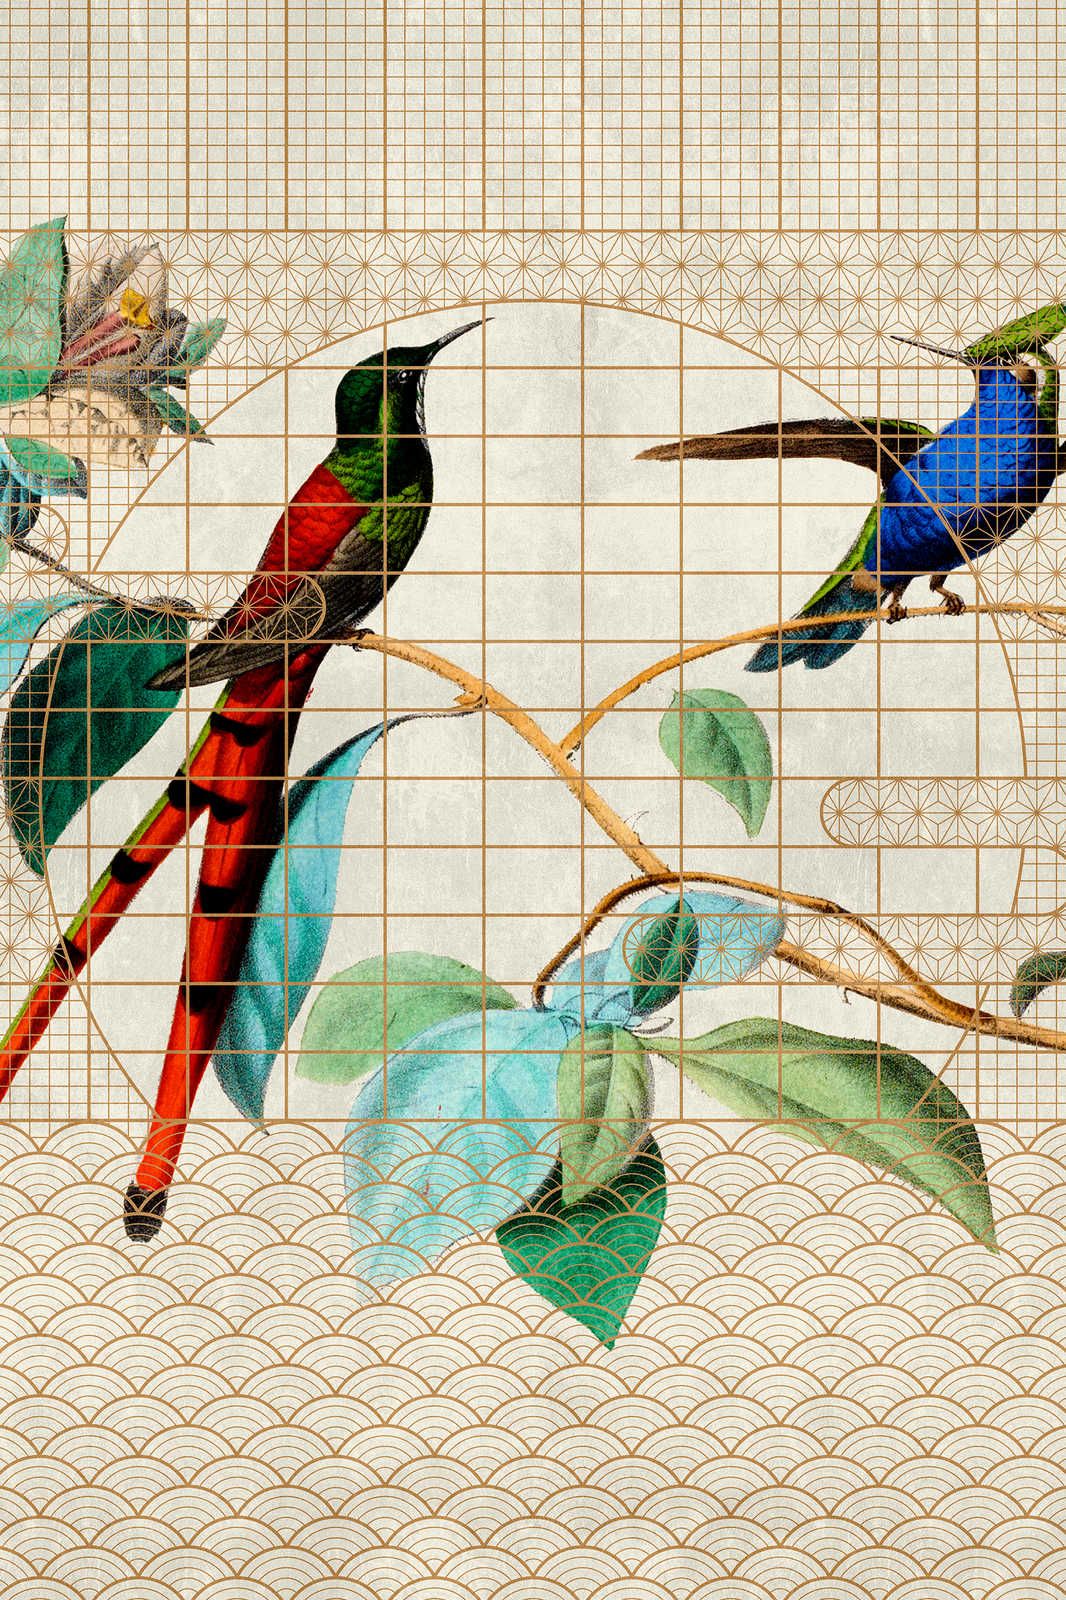             Volière 2 - Vogels Canvas schilderij Zingende vogels in een gouden kooi - 0.90 m x 0.60 m
        